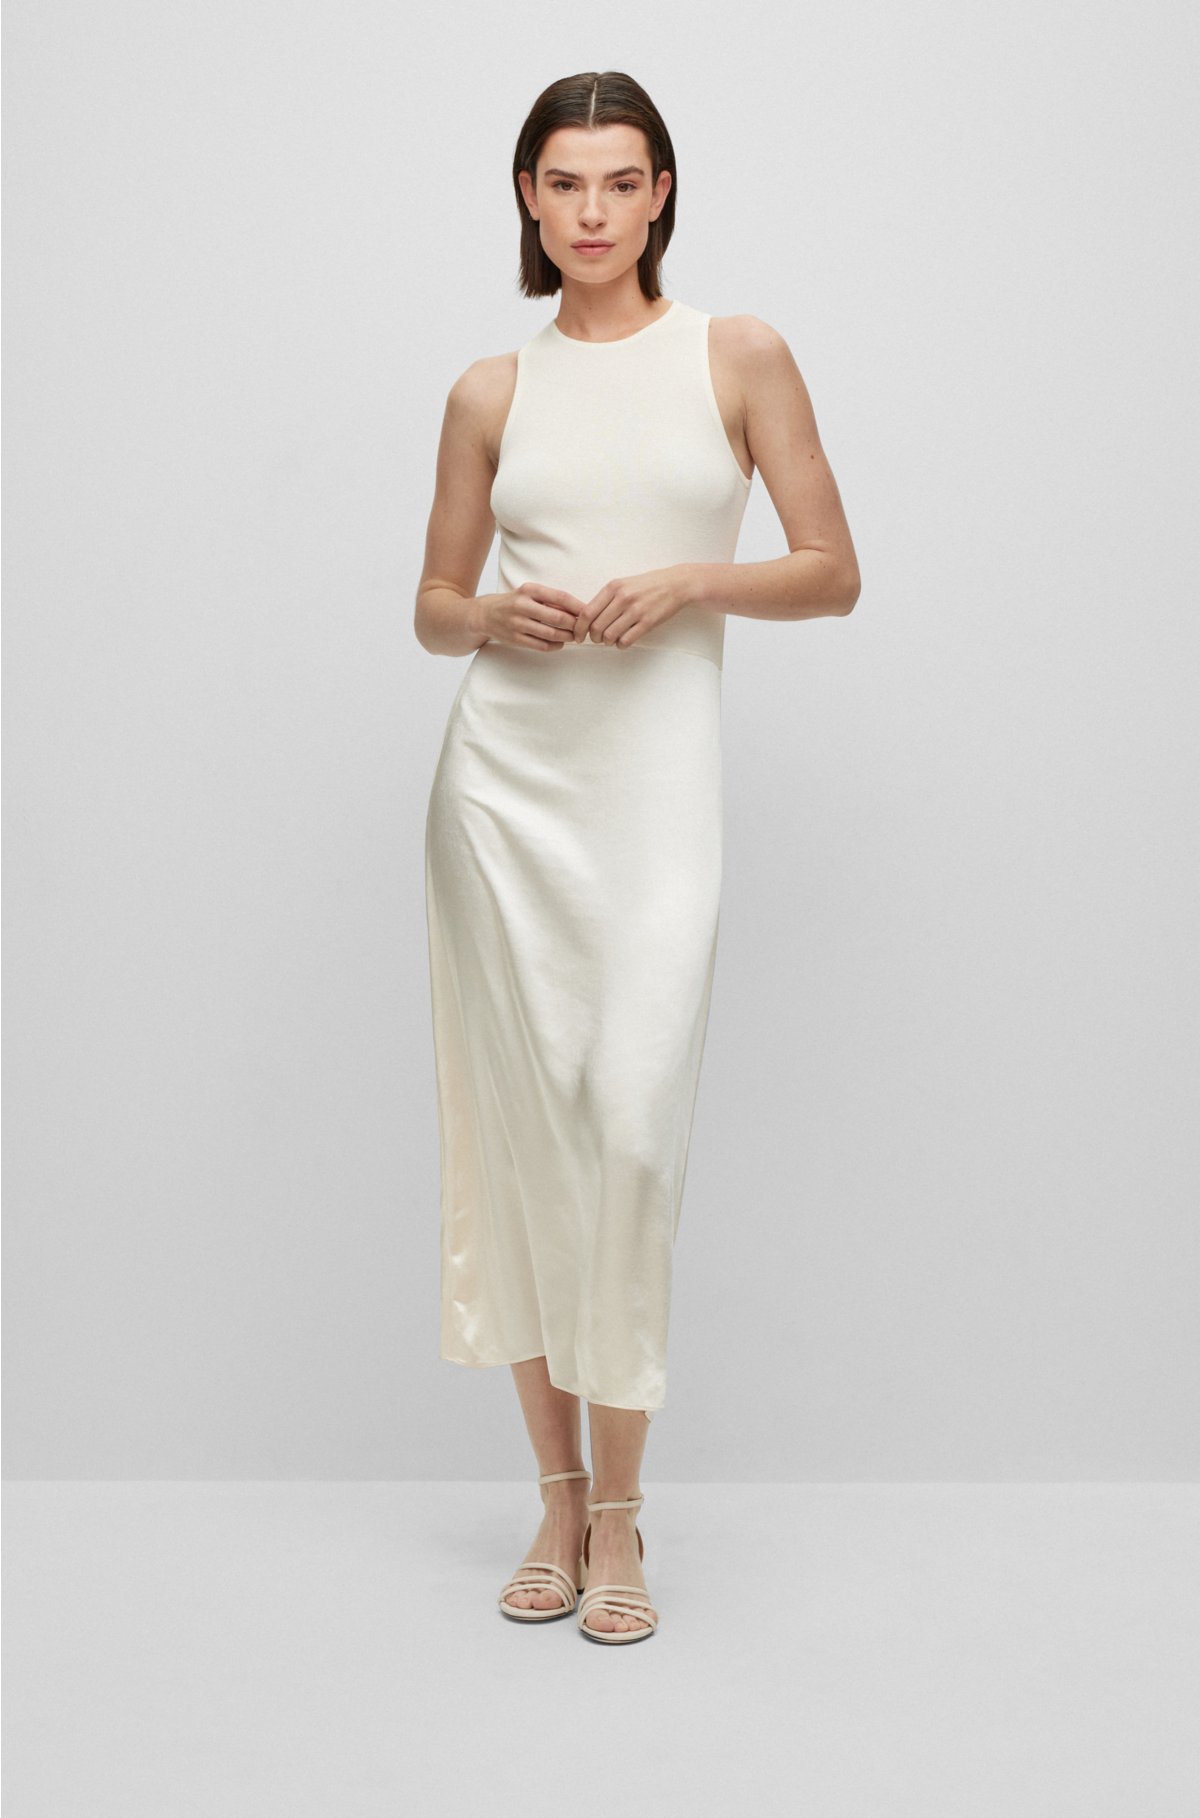 Slim-fit sleeveless dress in tonal fabrics, White